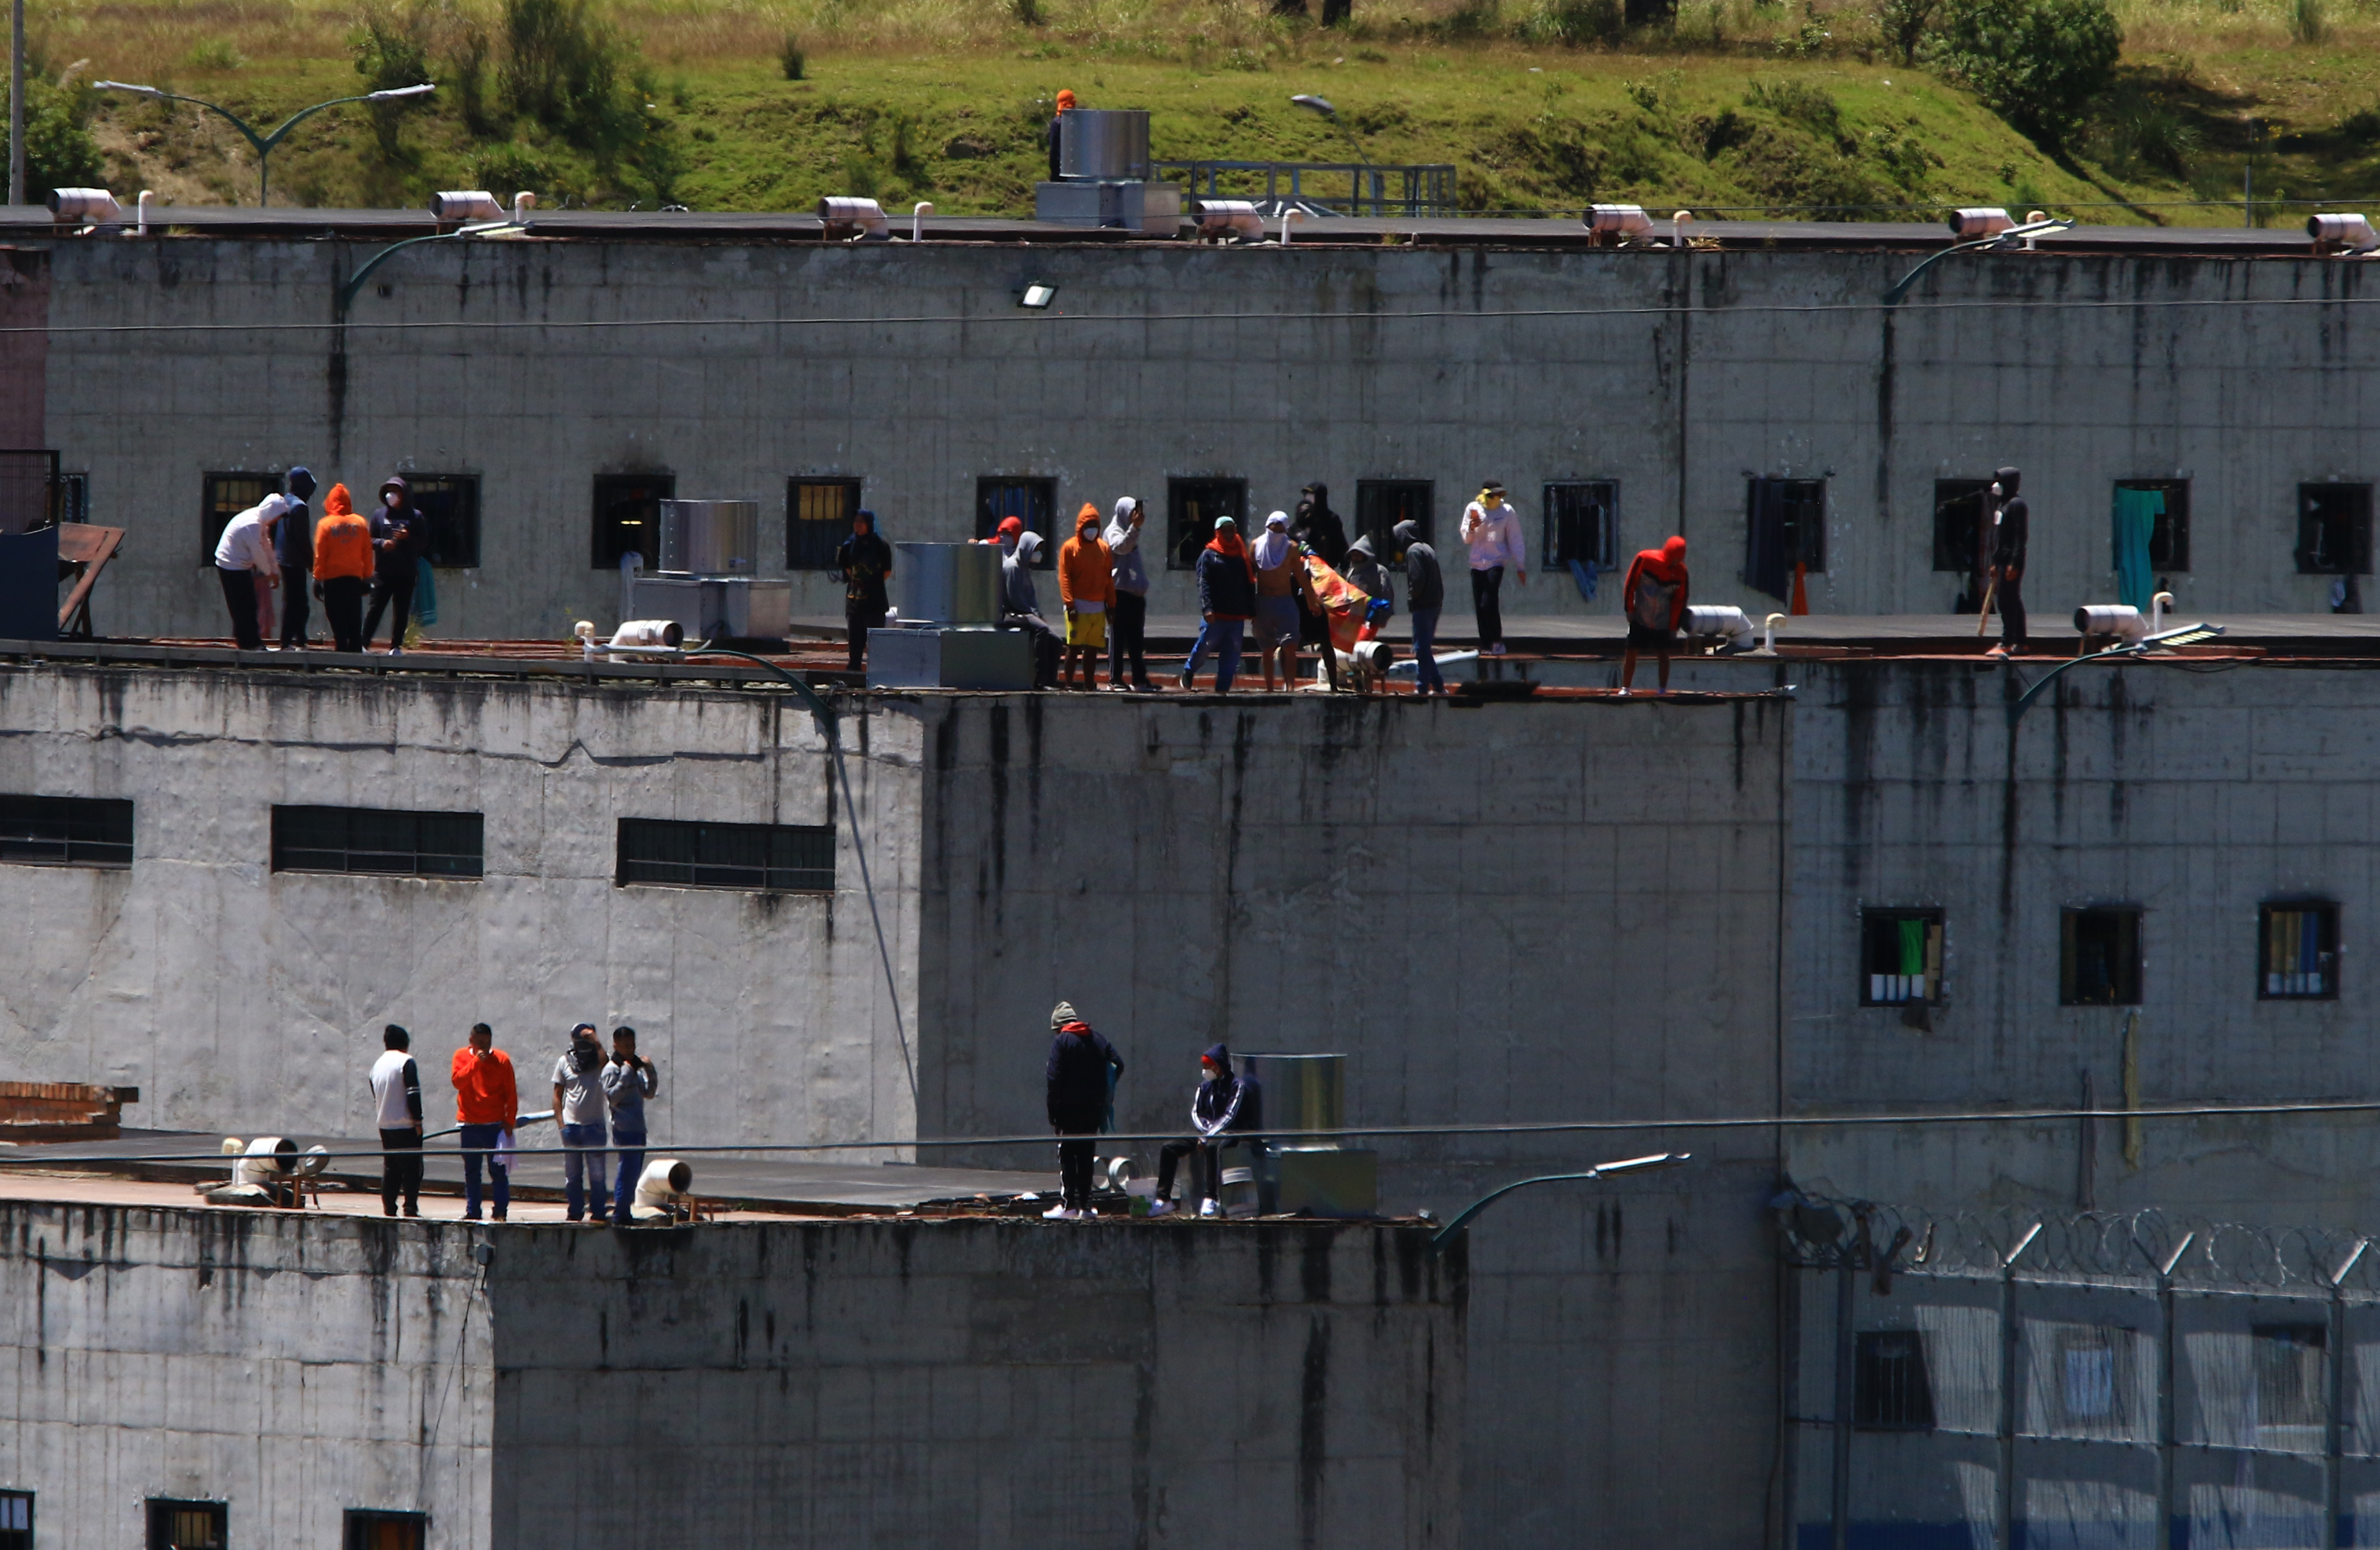 Suman 57 policías y guardias los retenidos como rehenes en cárcel de Ecuador